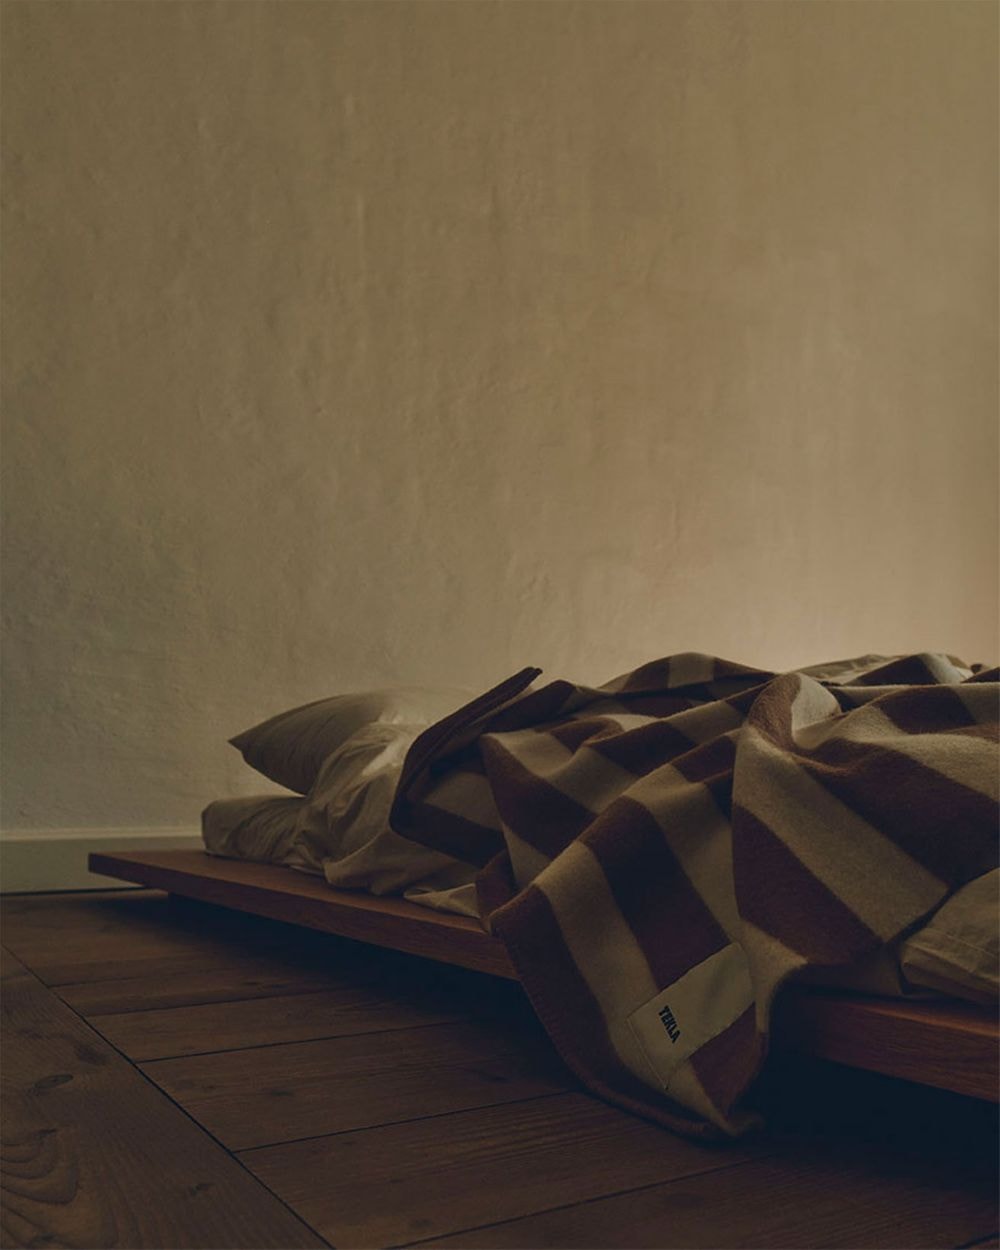 コペンハーゲン発のテクラ ファブリックスが2021年秋コレクションを発表 tekla fabrics fall blankets bedding sleepwear pajamas prism of light collection release date